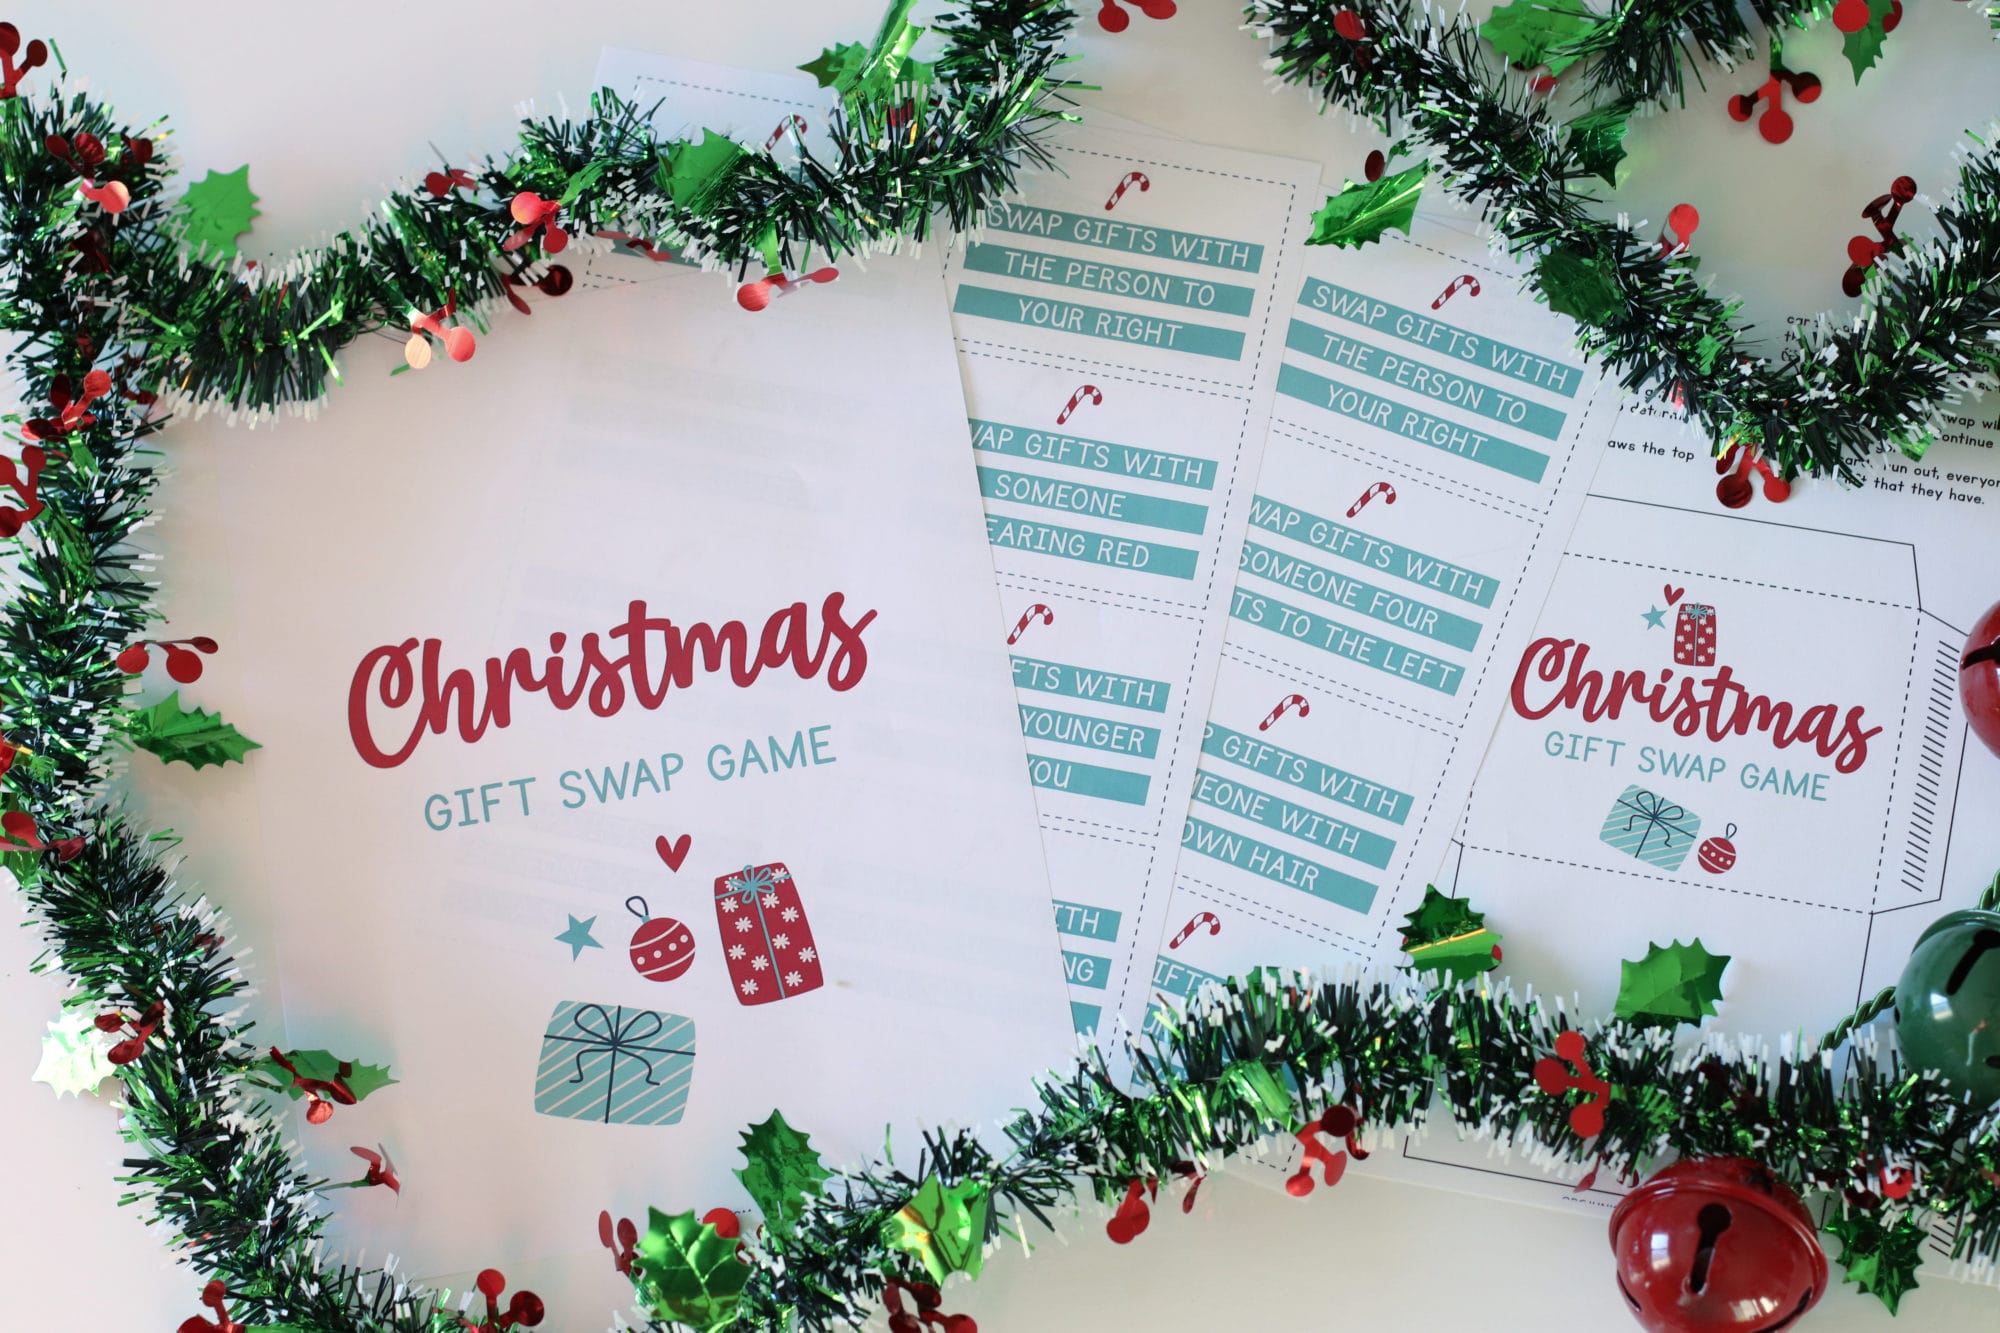 The Christmas Gift Exchange Game - Family Balance Sheet